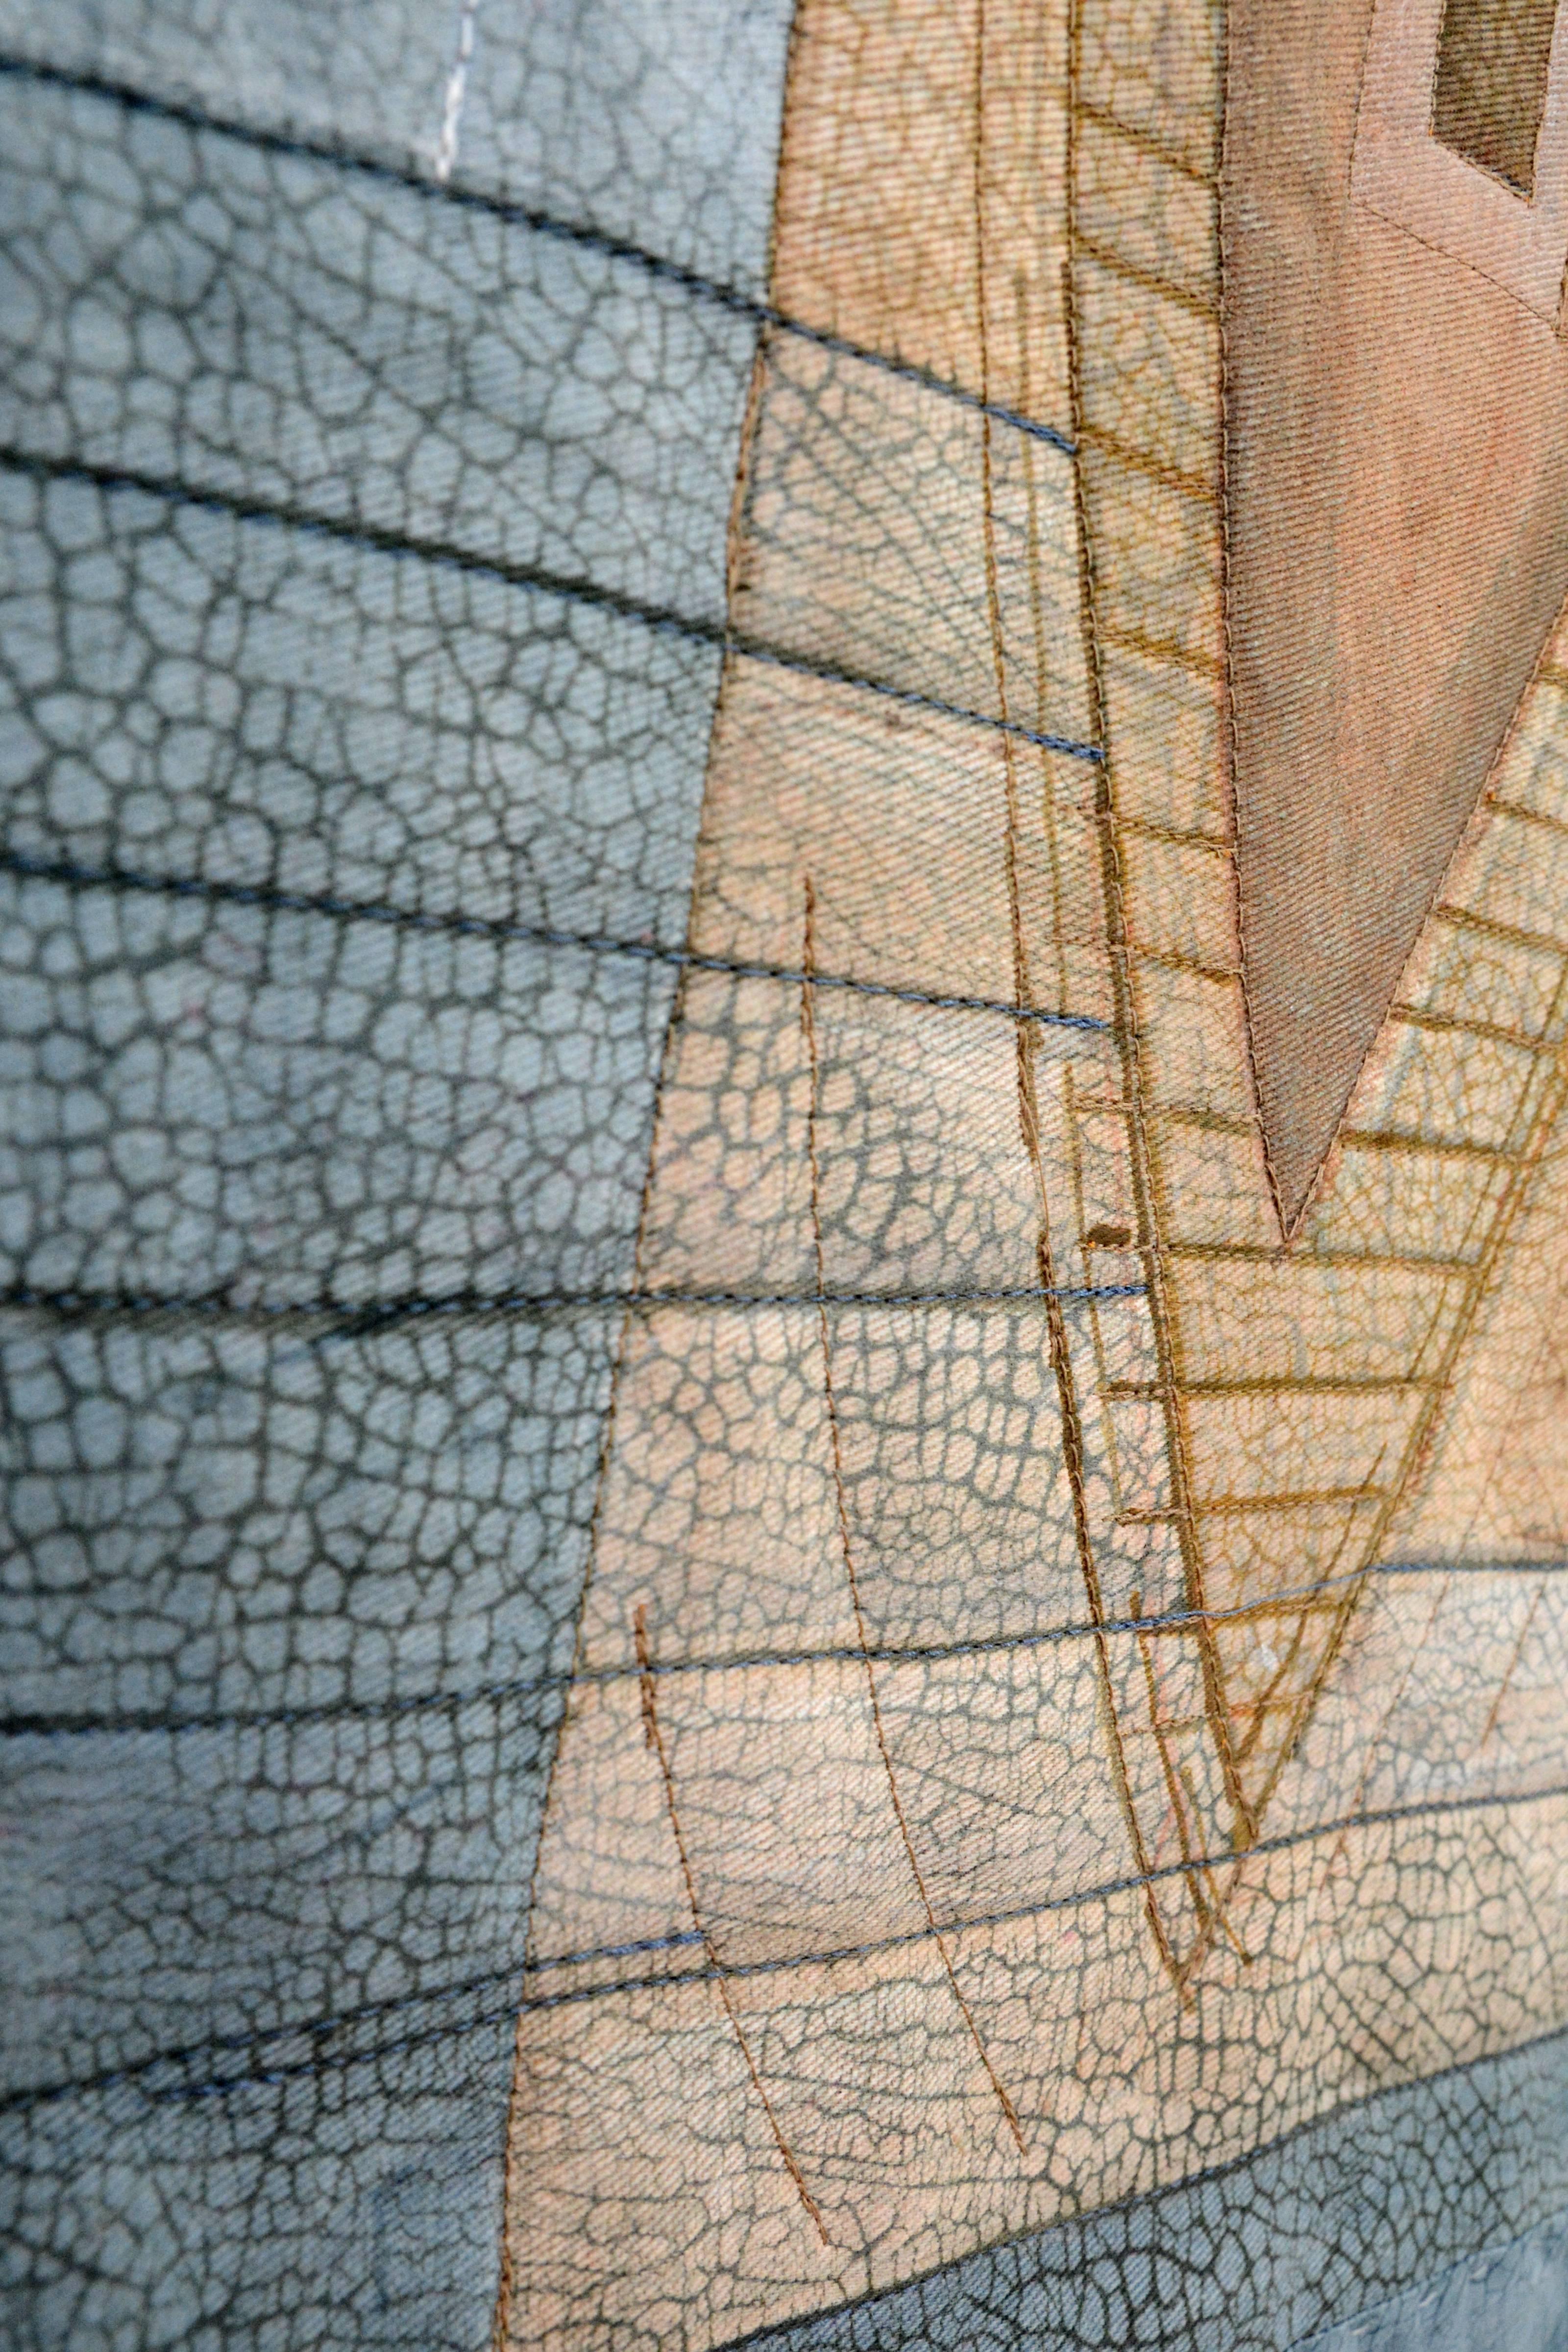 Une forme de canoë en céramique perforée et marquée émerge d'un socle à côté d'une tapisserie de bleu et de brun clair qui répète la forme verticale du canoë. Le titre de cette œuvre en techniques mixtes peut faire référence à la collecte